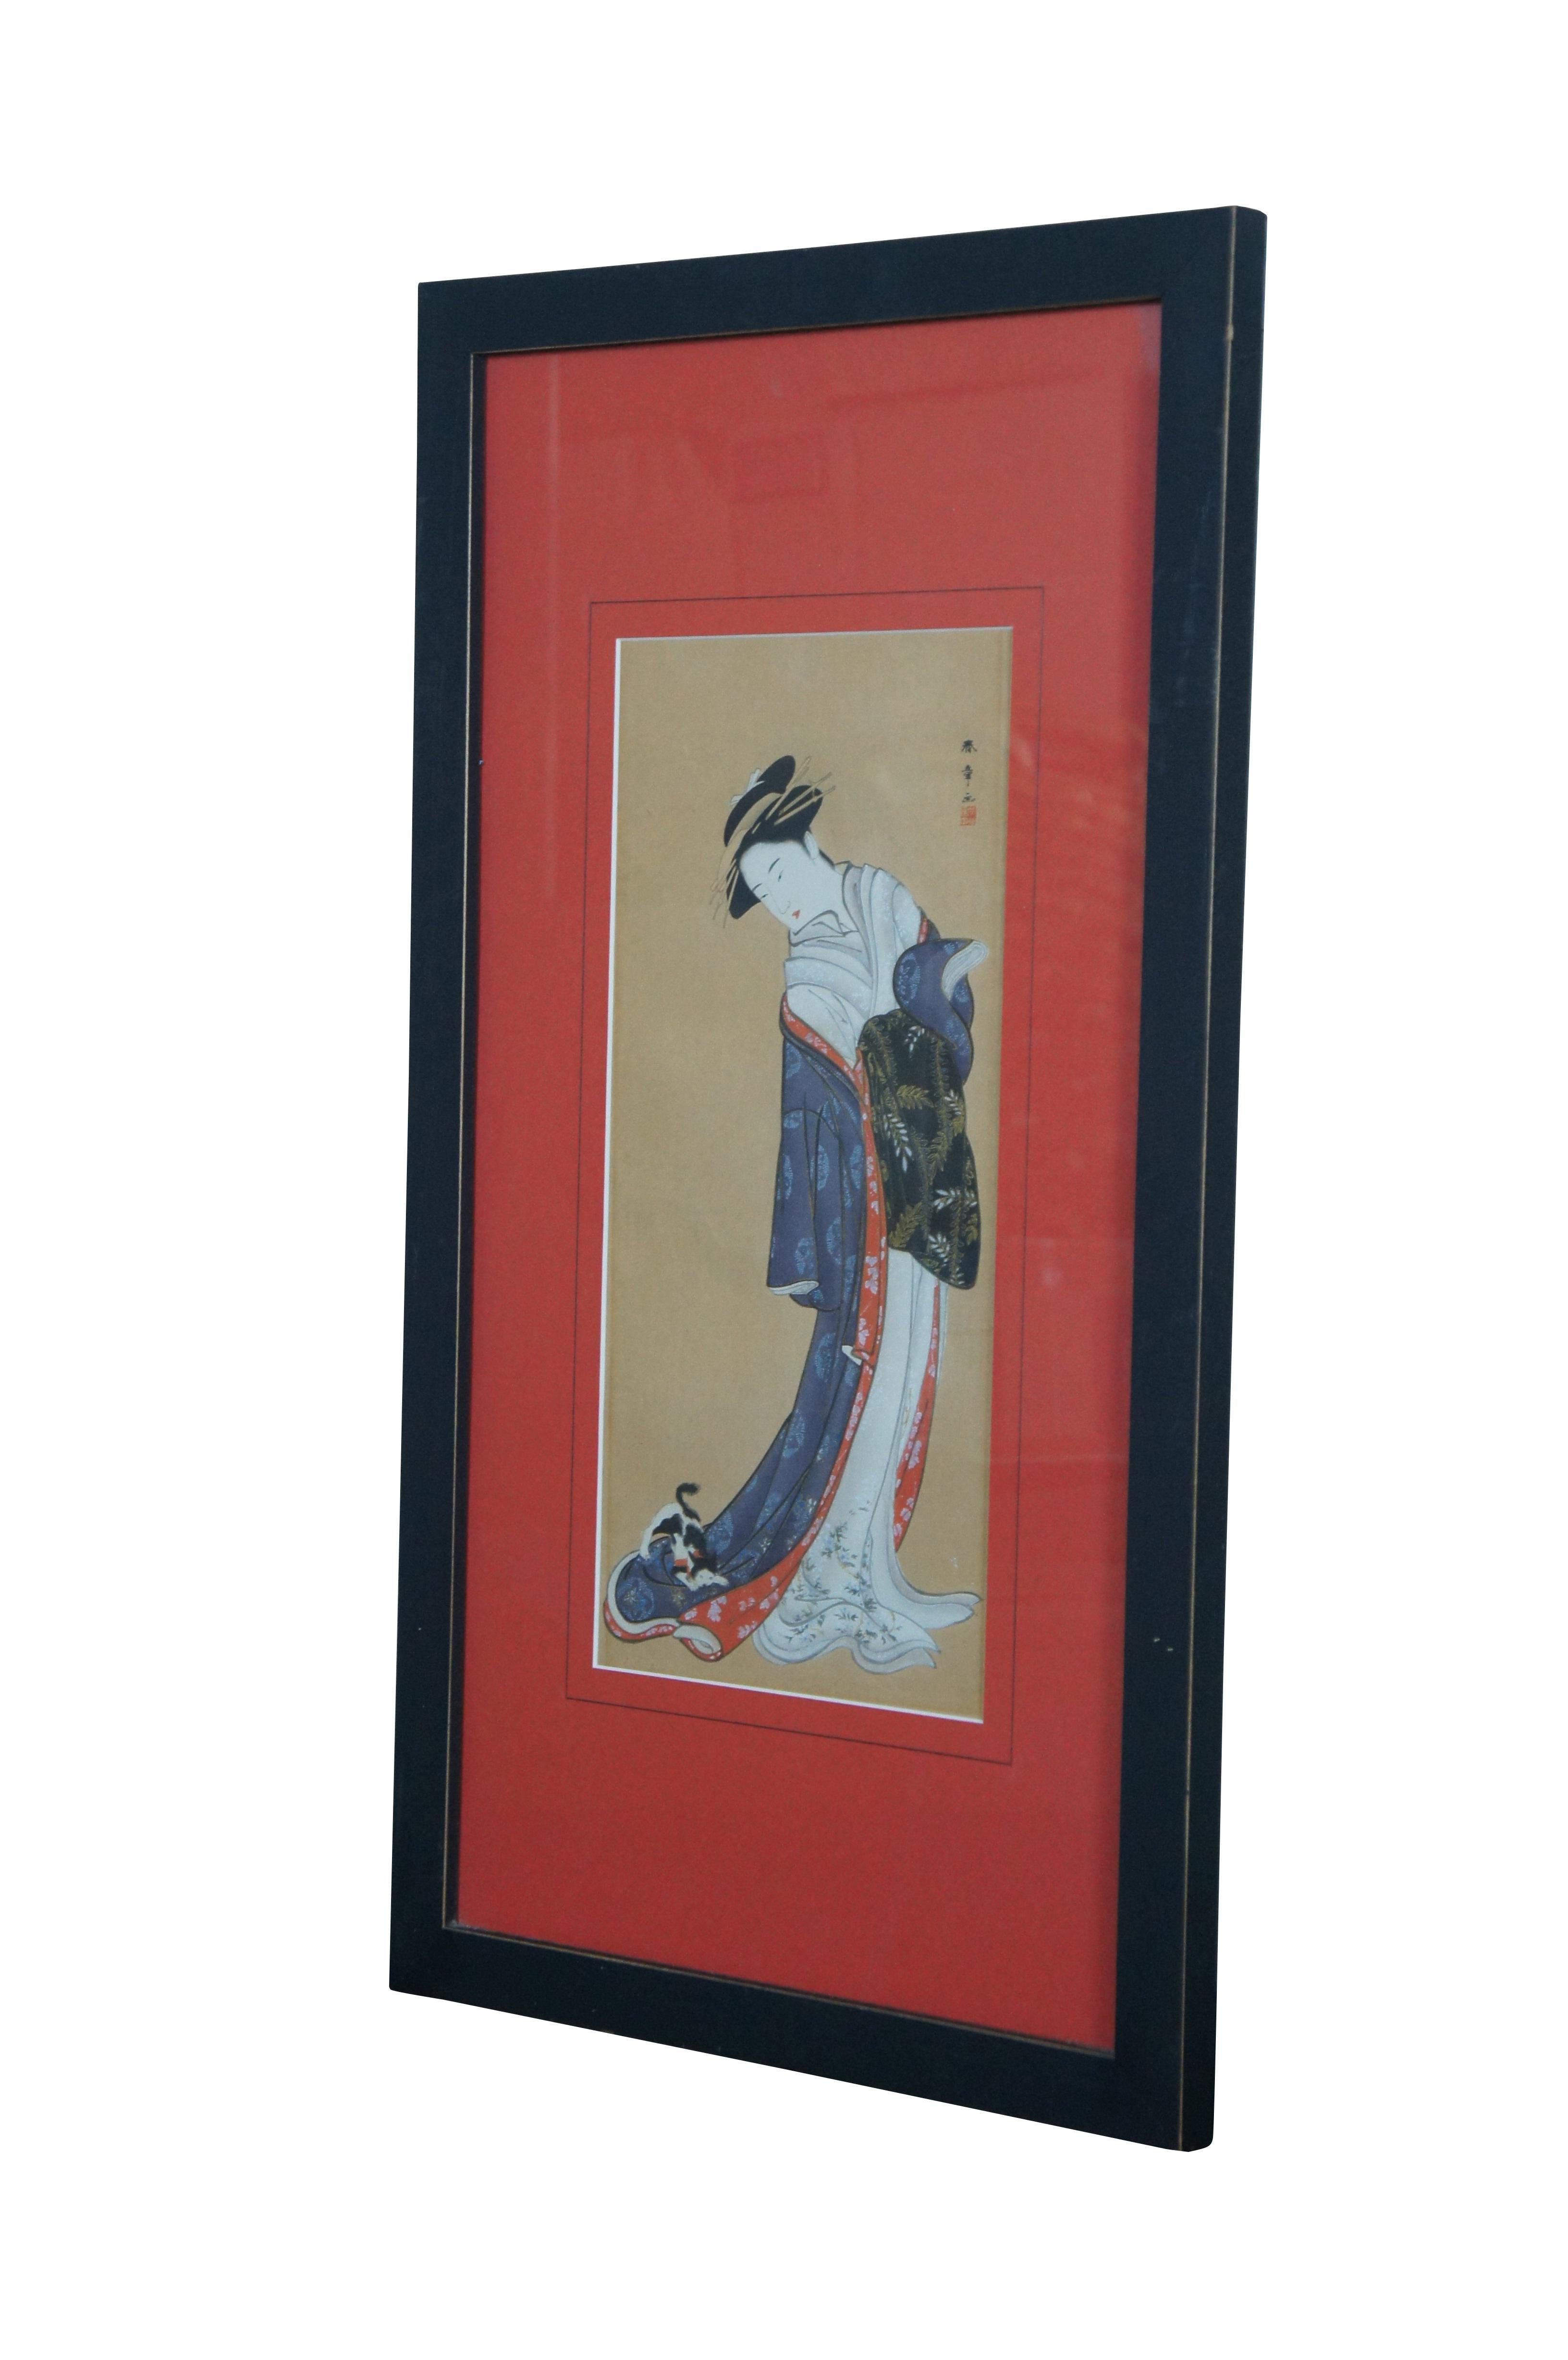 Antique late 18th century Edo ukiyo-e style Japanese woodblock print titled 